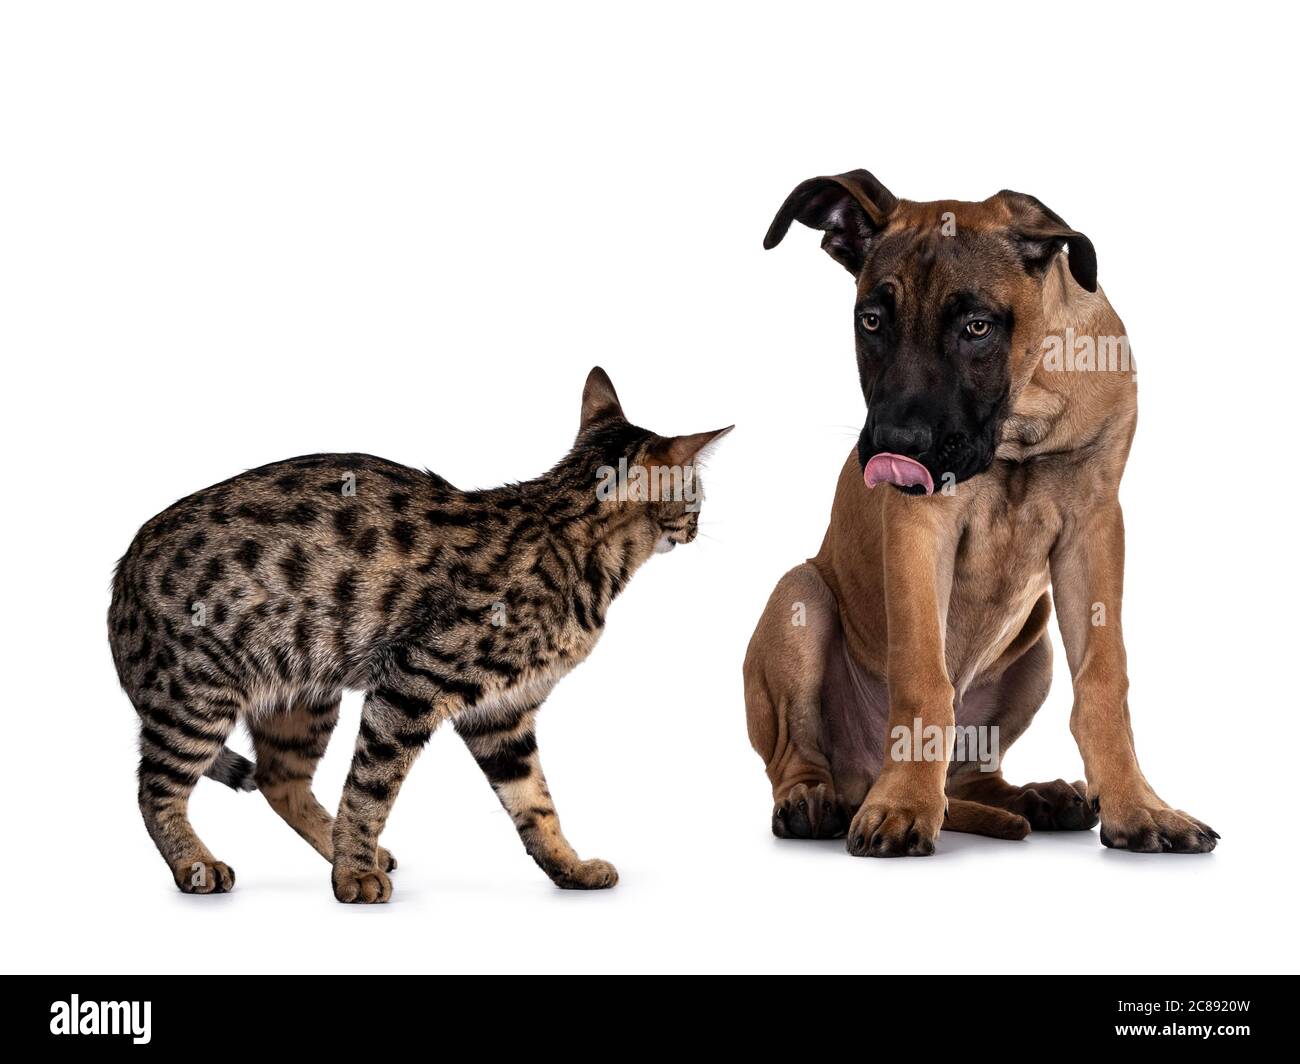 Savannah F7 Katze und Boerboel malinois Cross Breed Hund, spielen zusammen.  Katze stehend Blick auf Hund sitzen aufrackende Zunge aus.. Isoliert auf  Weiß Stockfotografie - Alamy